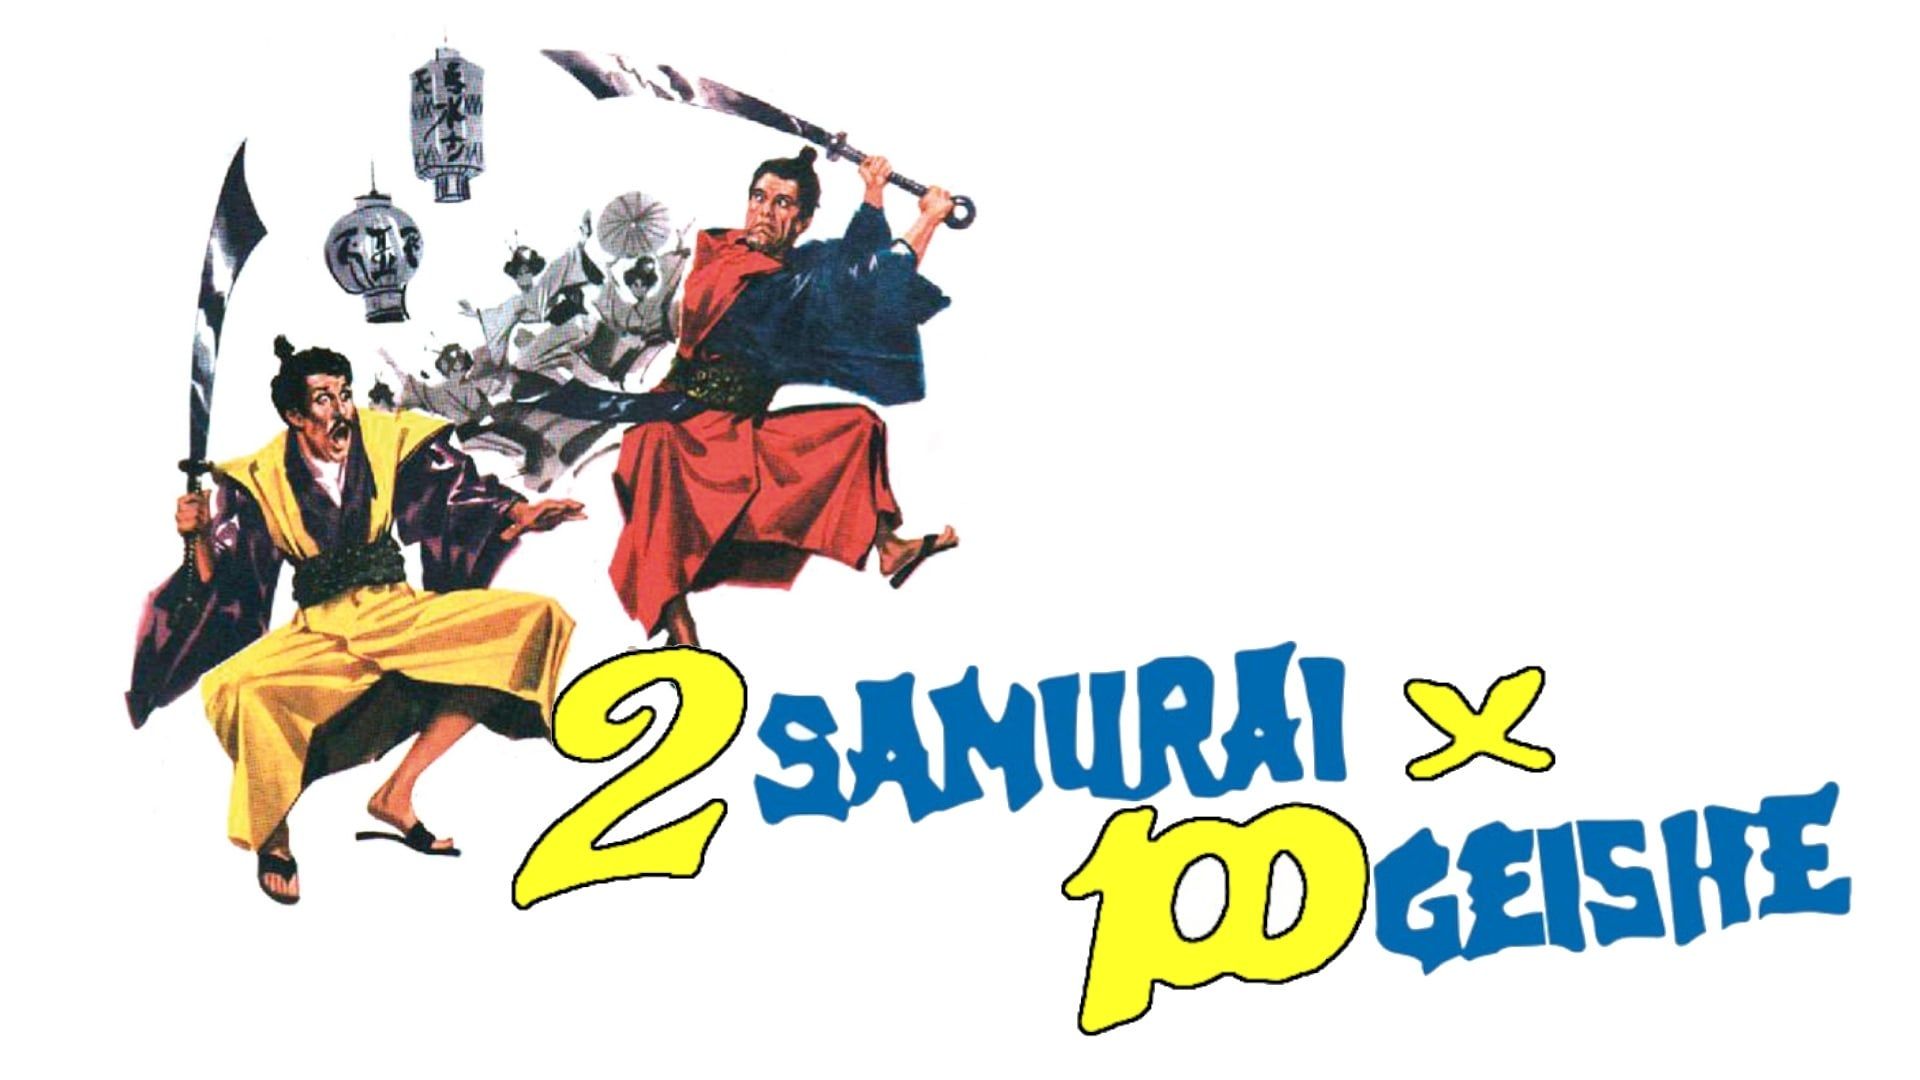 Cubierta de 2 samurai per 100 geishe